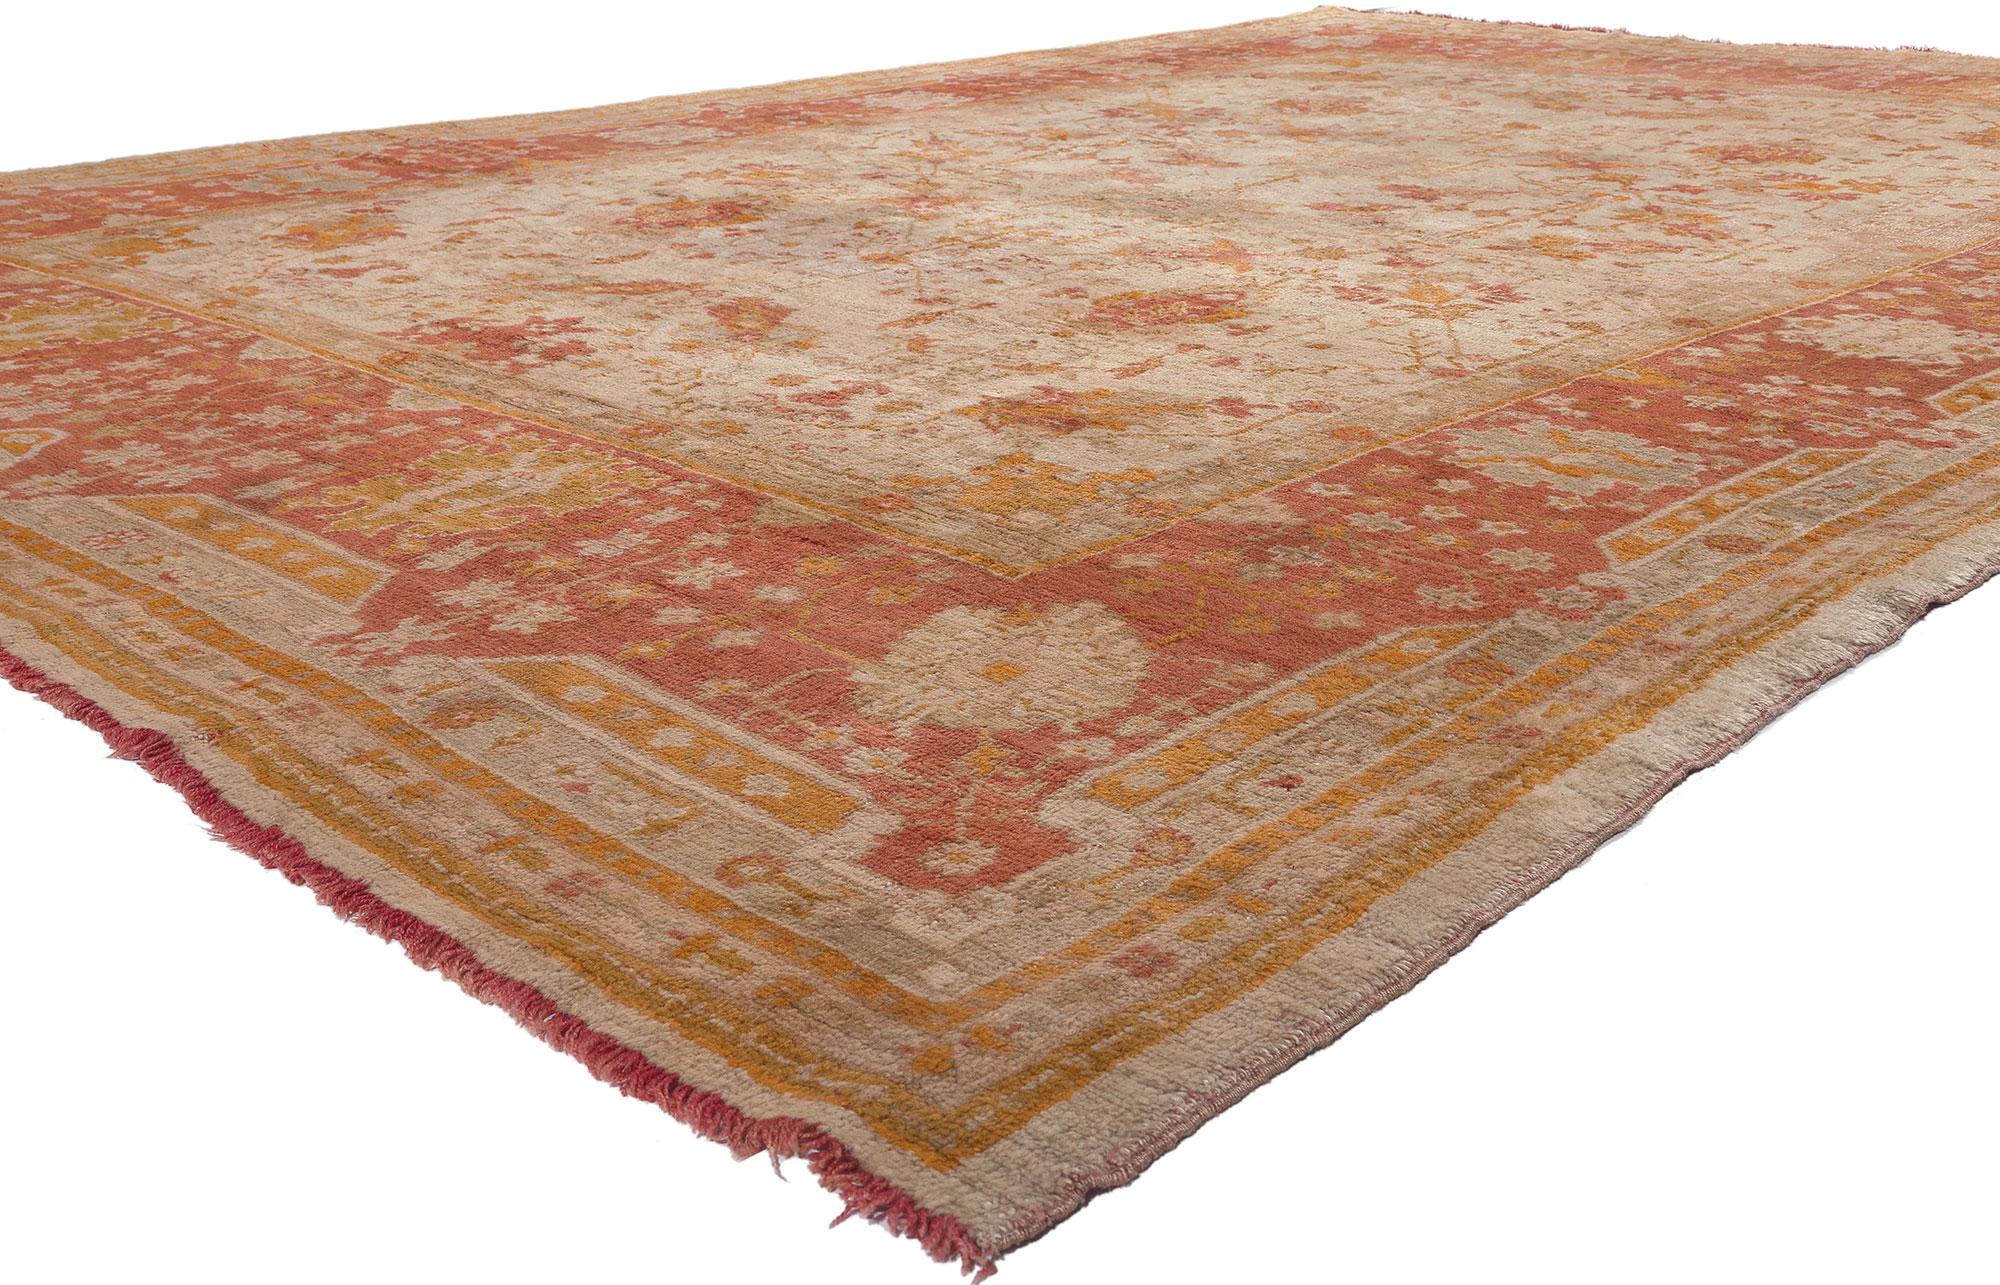 78608 Antiker türkischer Oushak-Teppich, 10'02 x 14'07. Dieser handgeknüpfte antike türkische Oushak-Teppich aus Wolle strahlt entspannte Vertrautheit mit unglaublichen Details und Texturen aus und ist eine fesselnde Vision gewebter Schönheit. Das